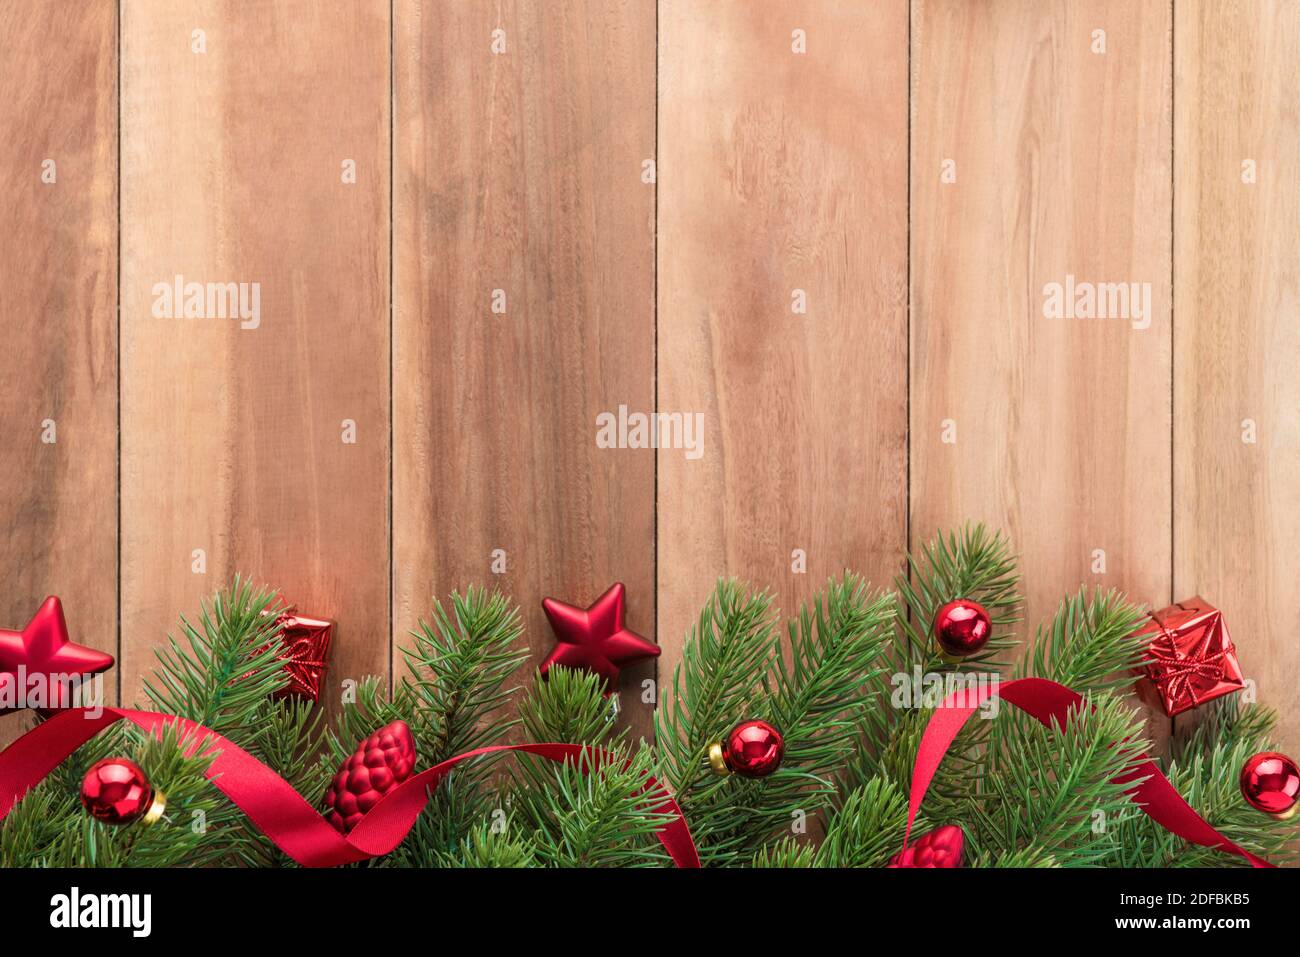 Foglie verdi dell'albero di Natale con ornamenti rossi luminosi su sfondo di legno, disegno di bordo Foto Stock